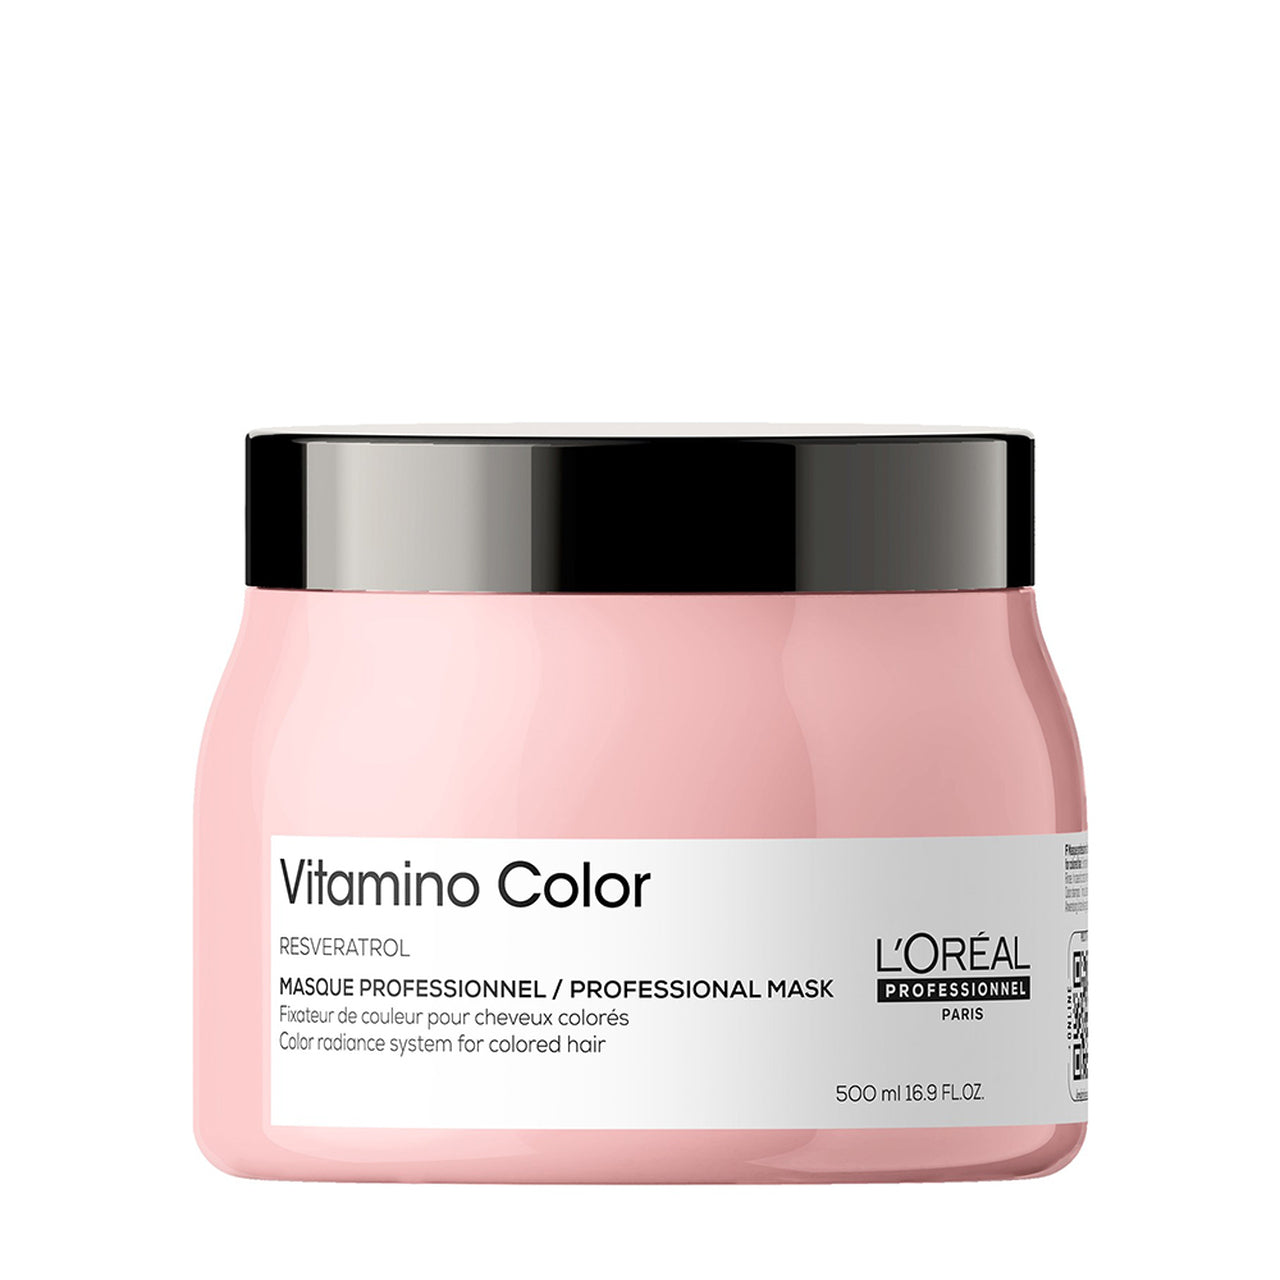 L'oreal Professionel vitamino color Masque 500 ml - Australian Salon Discounters